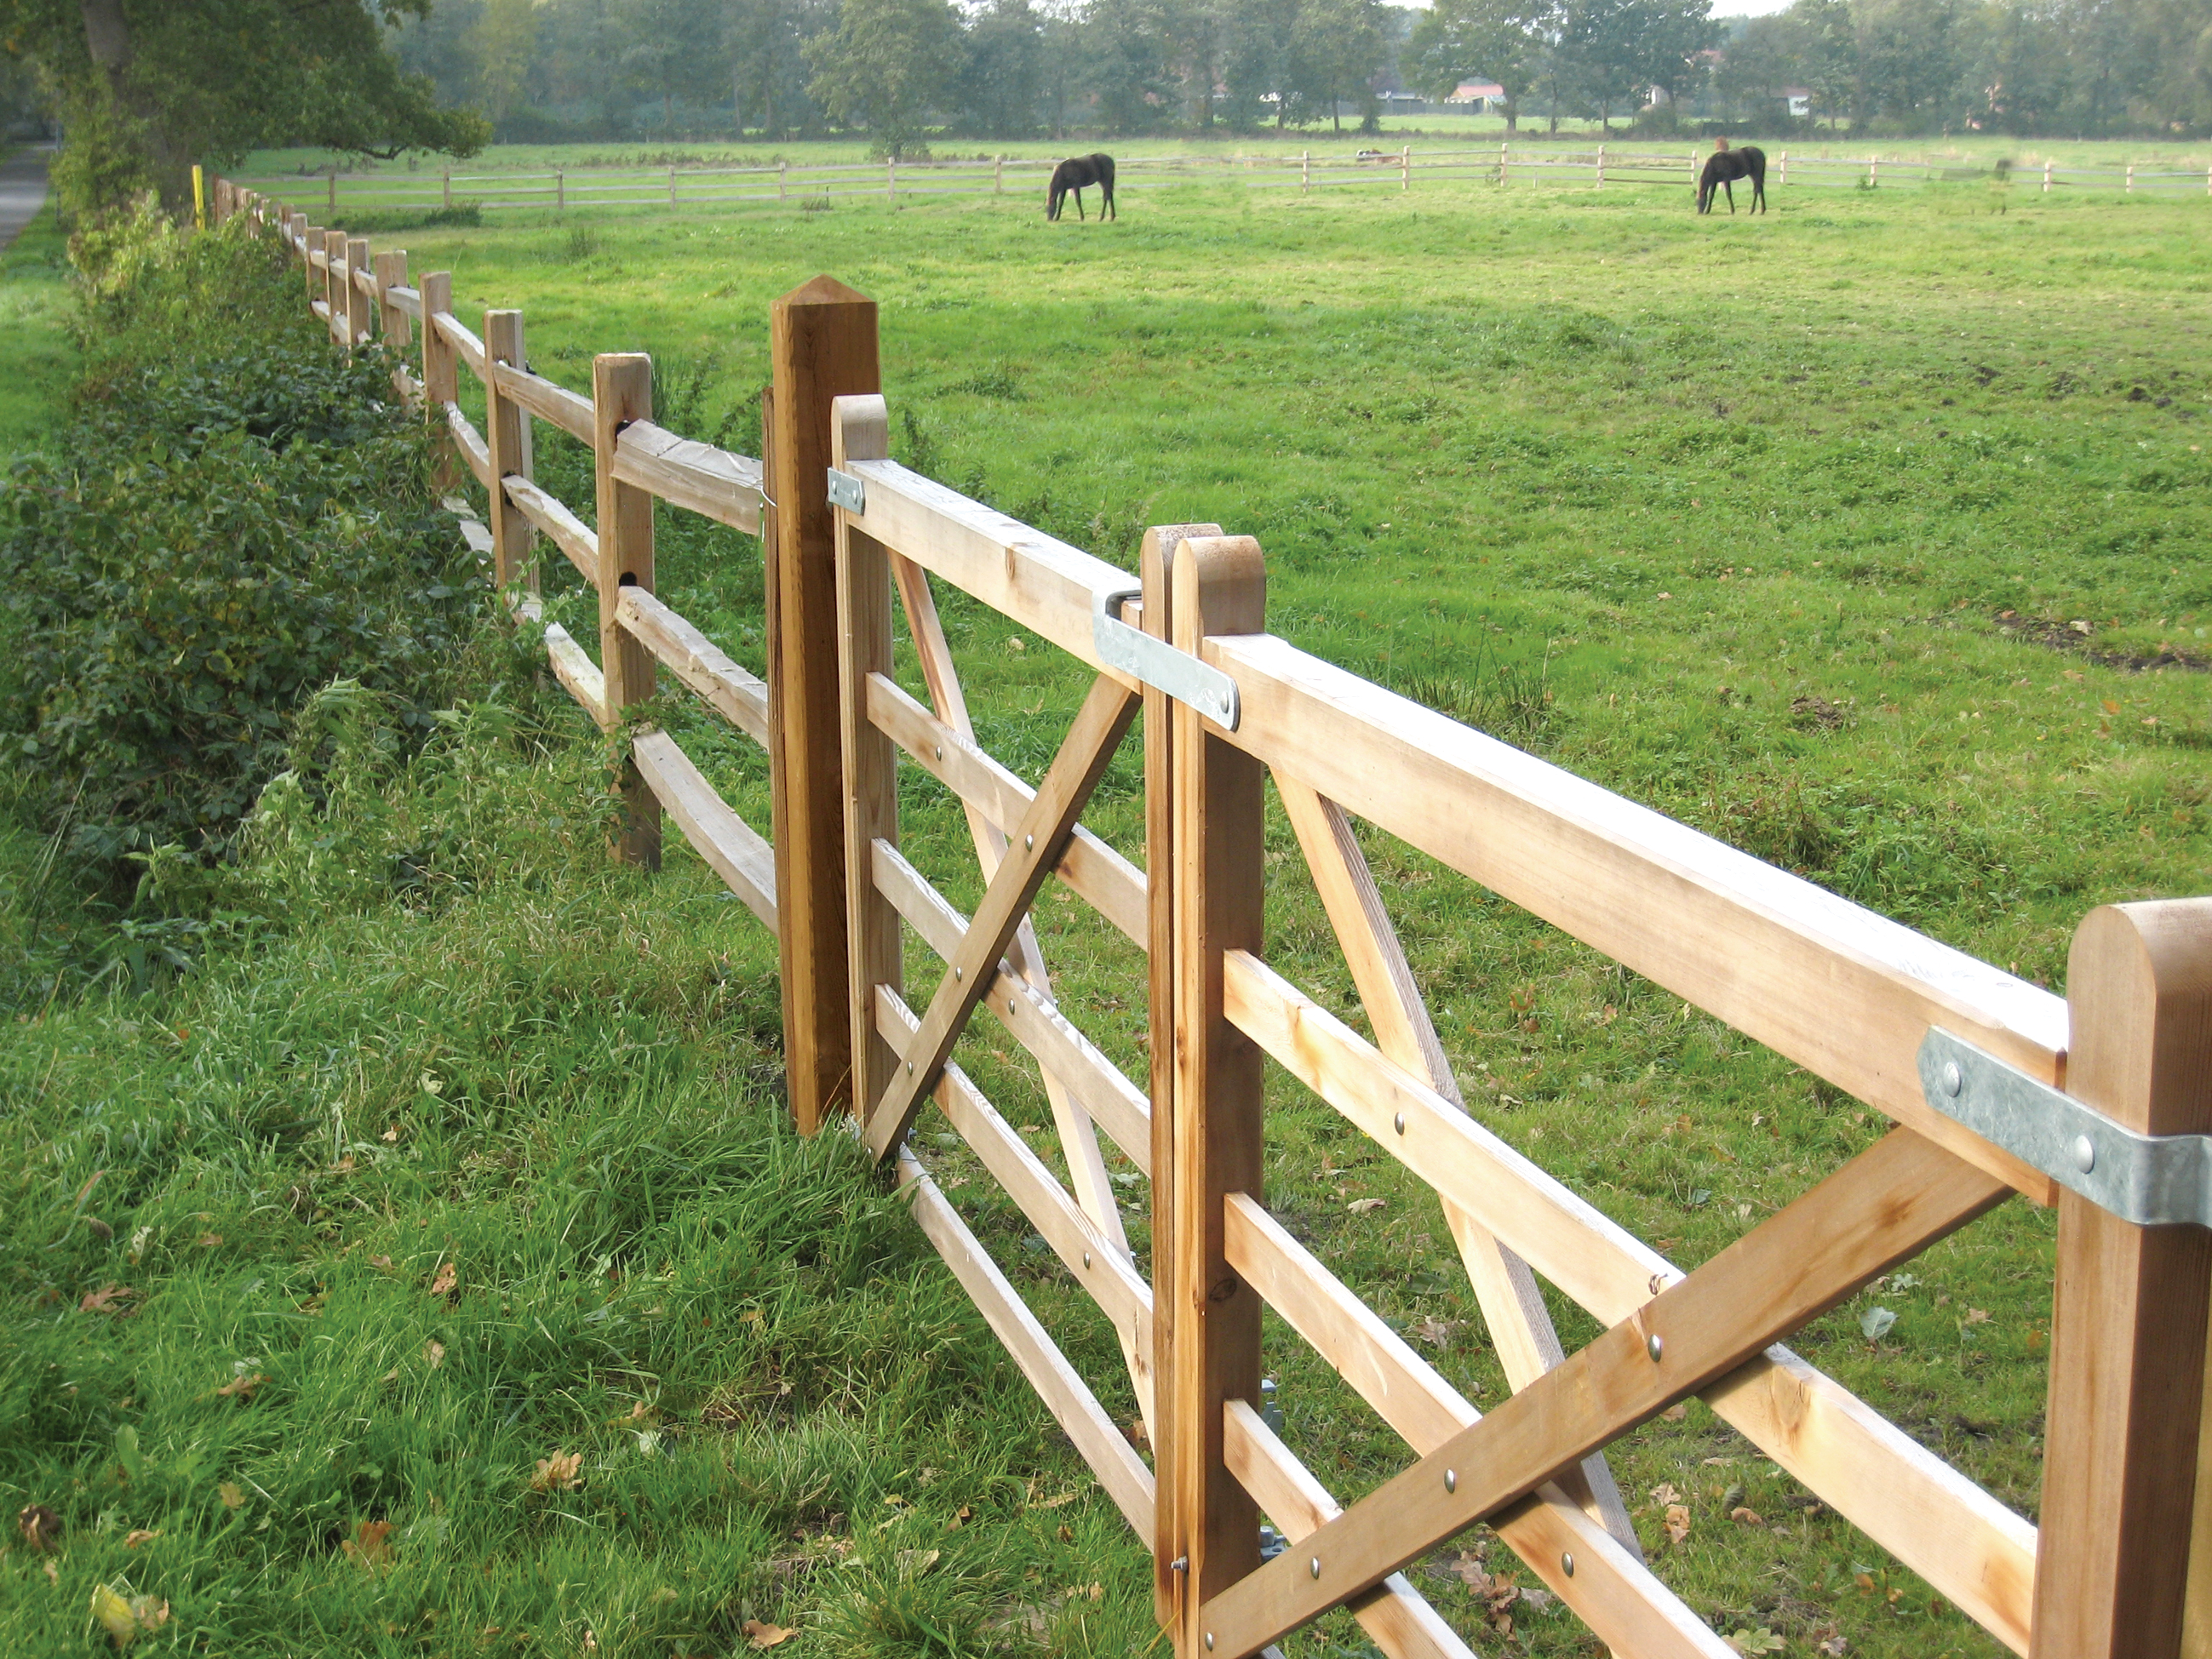 Zwei Holztore und ein rustikaler Pferdezaun aus Zedernholz bilden eine Pferdekoppel, auf der zwei Pferde grasen.